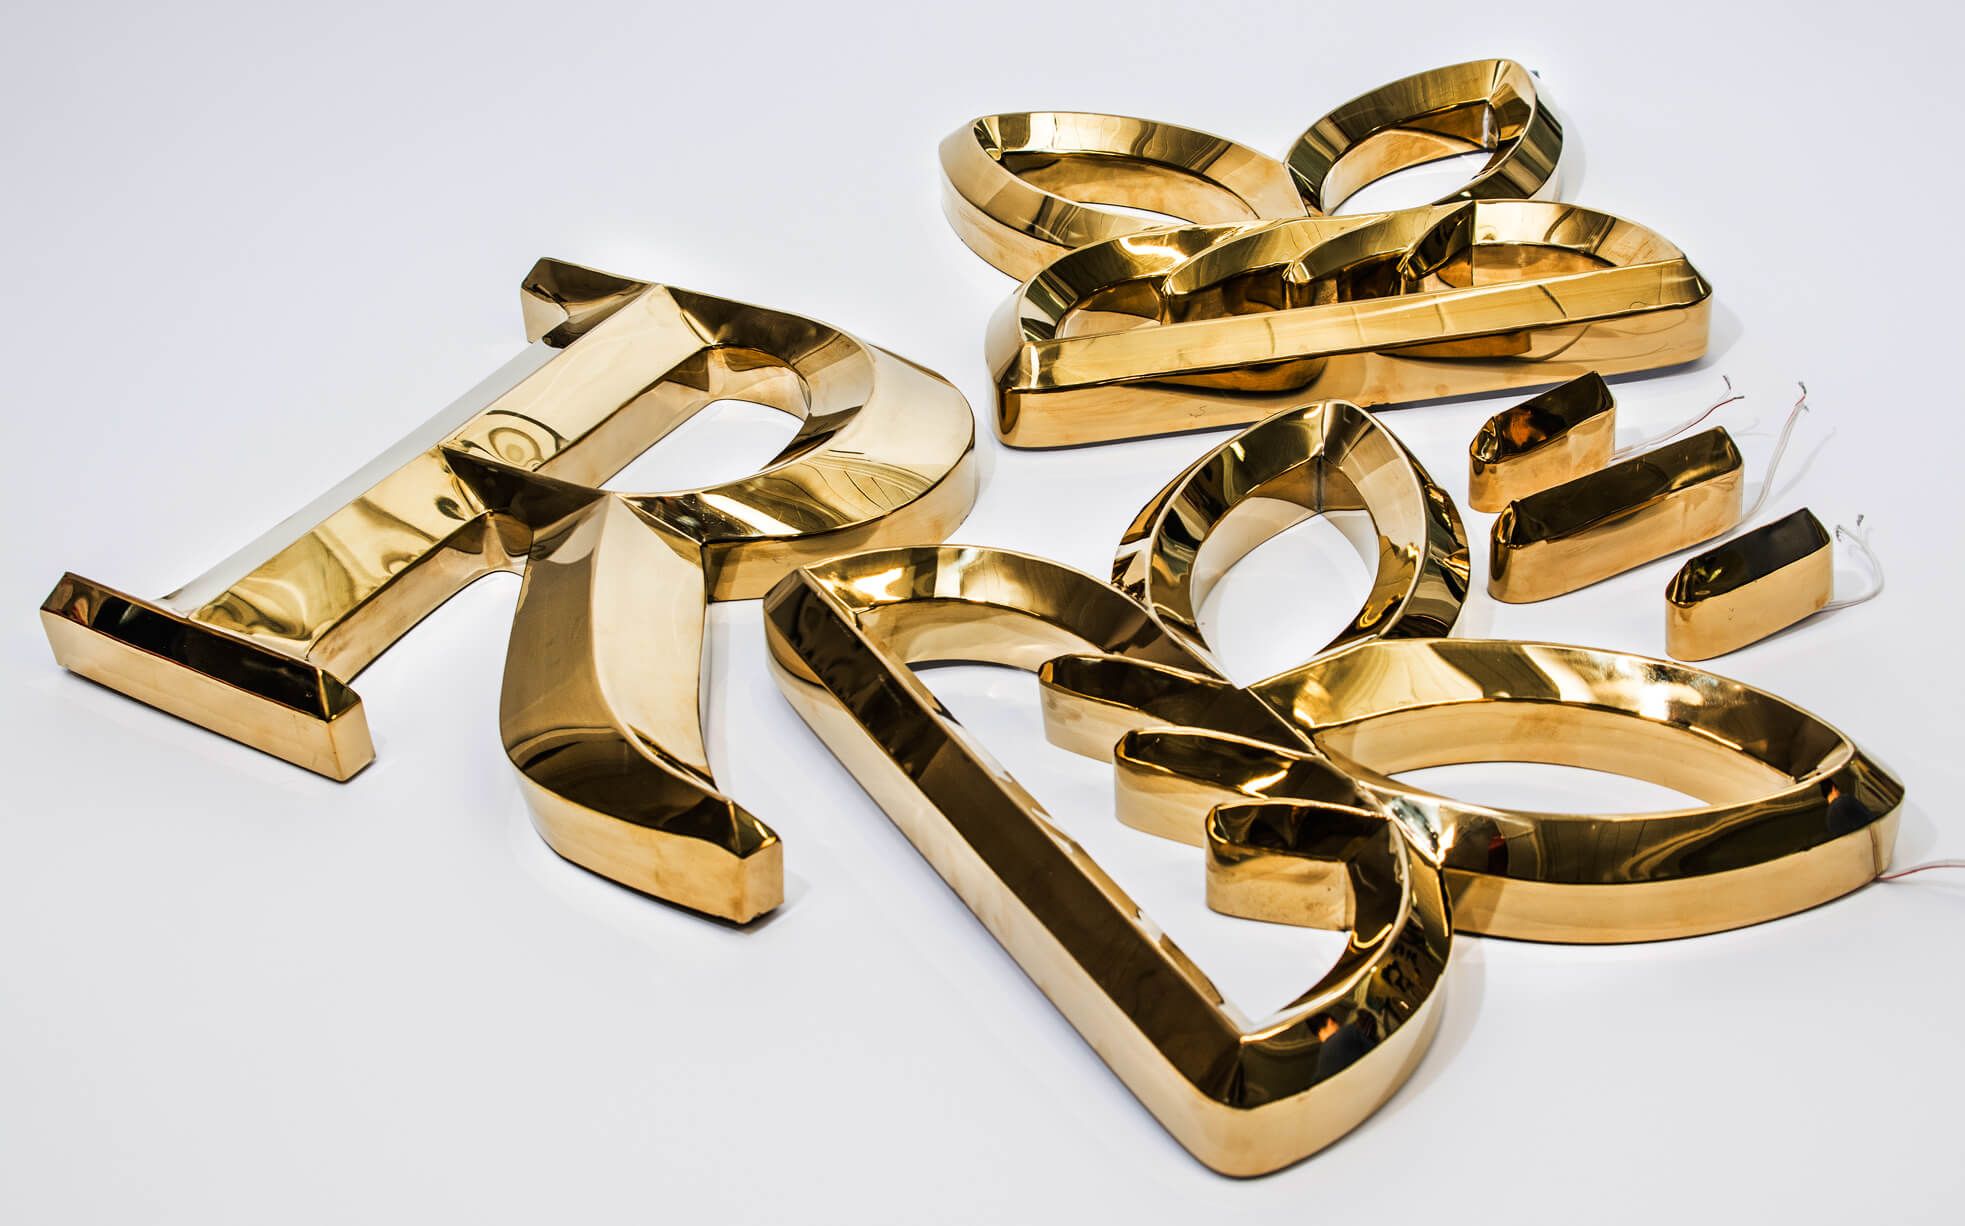 Litery pryzmatyczne - Złote litery pryzmatyczne wykonane z metalu